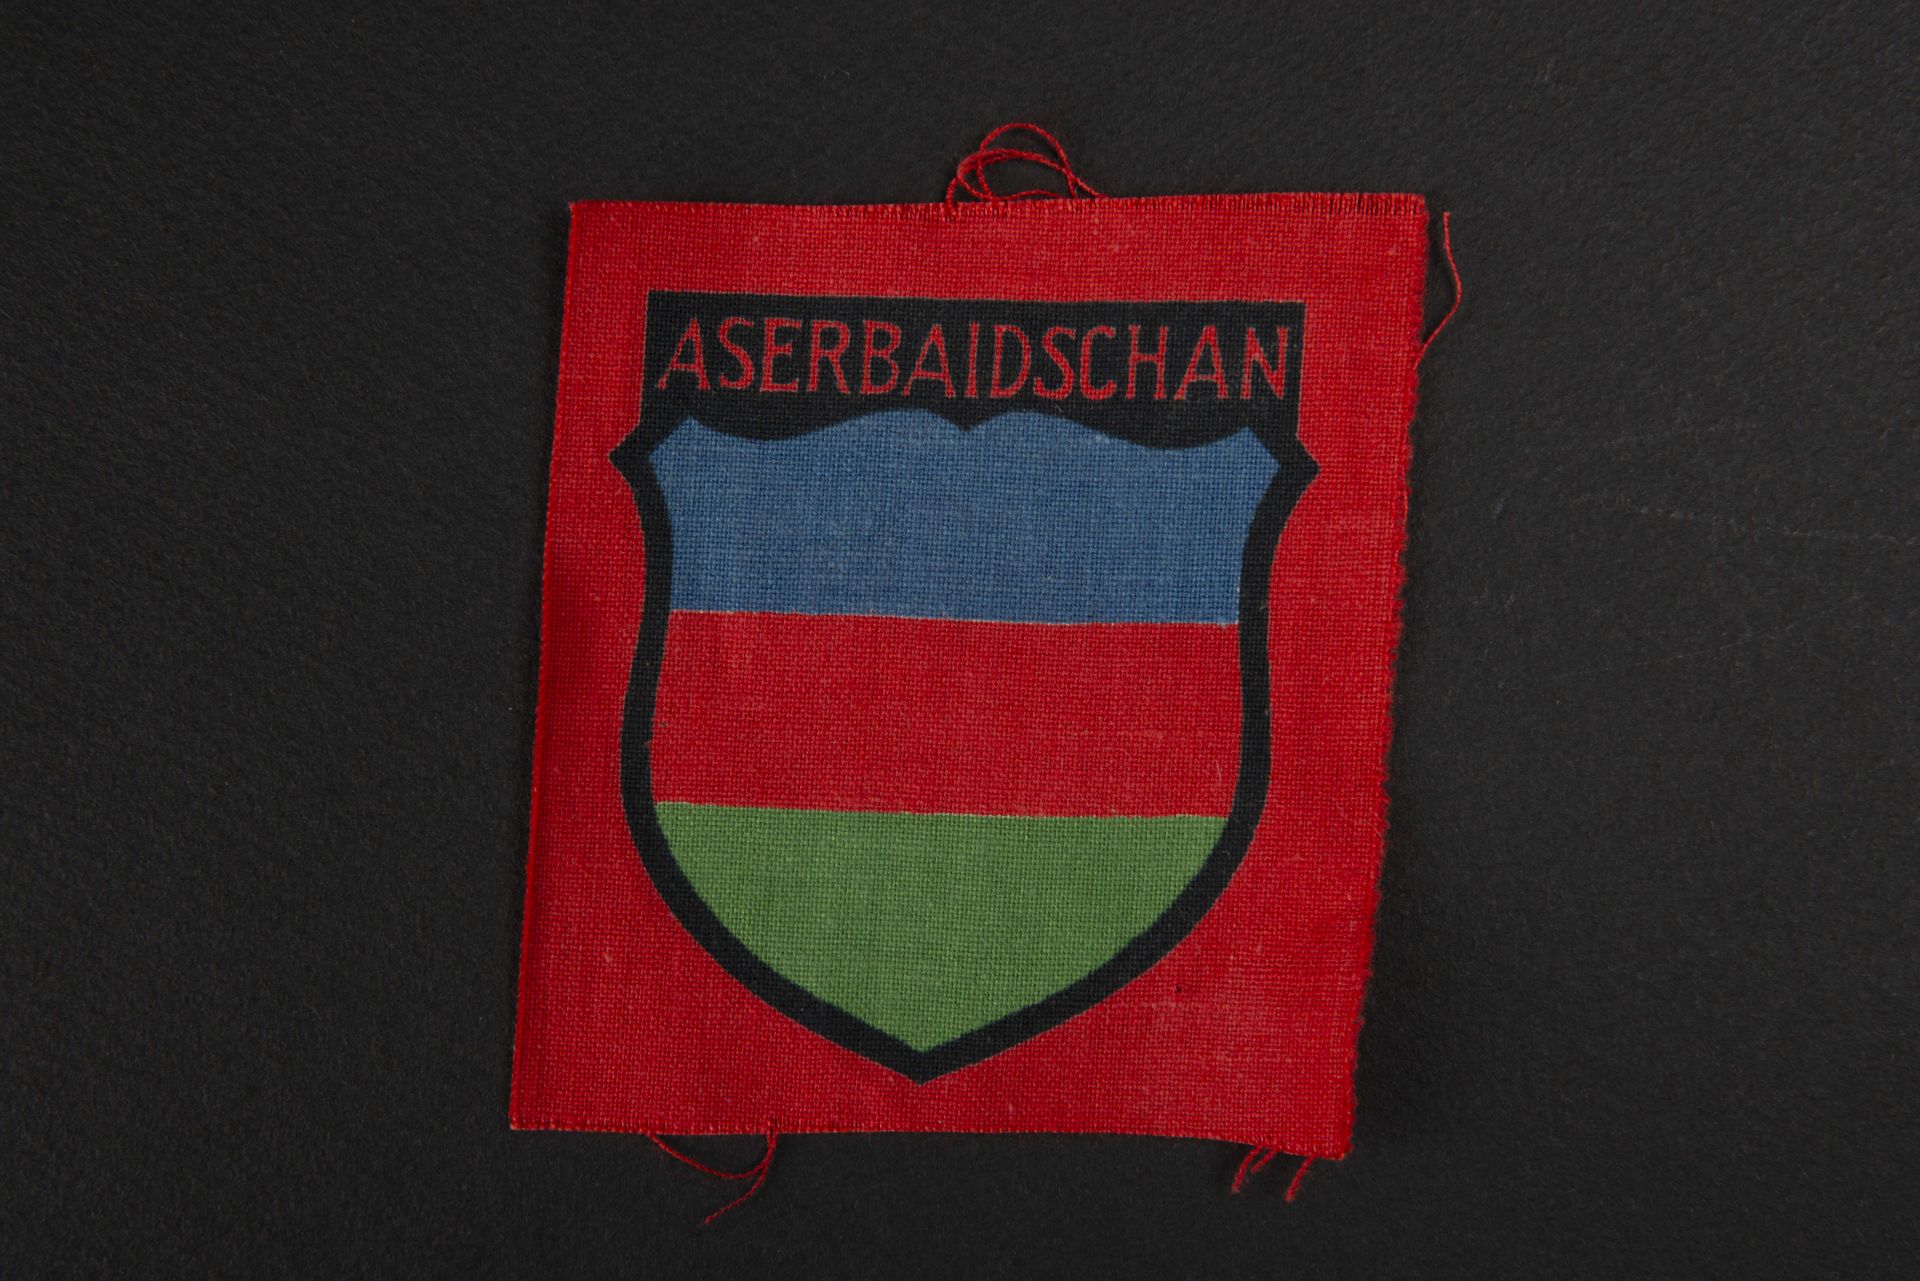 Insigne Aserbaidschan. Aserbaidschan insignia.